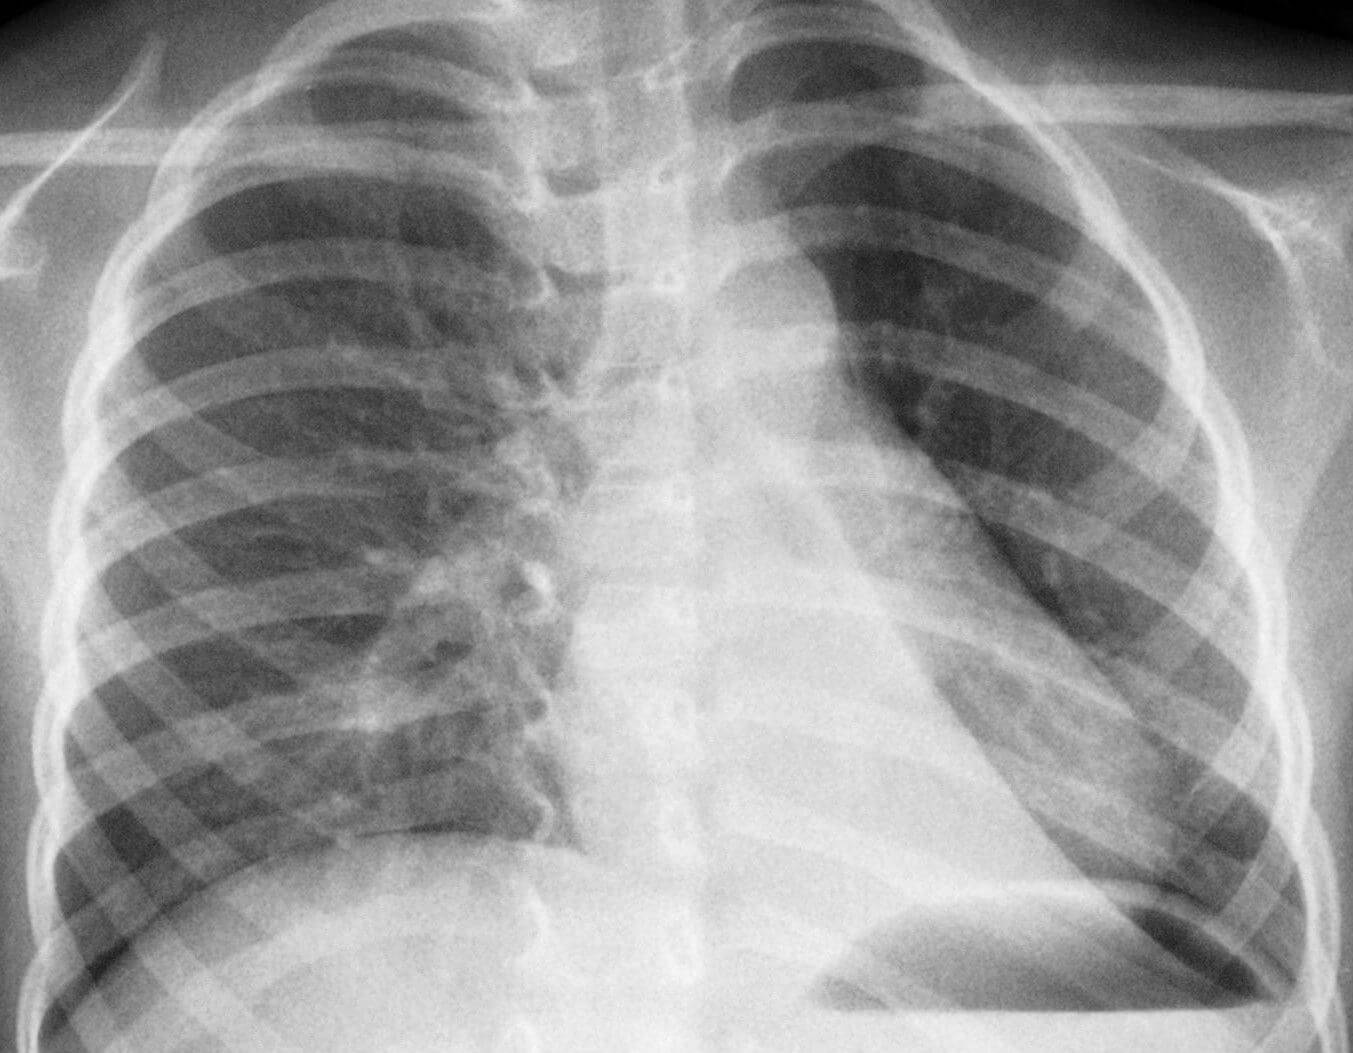 Первый признак воспаления легких у детей и взрослых: симтпомы пневмонии легкой формы, рентгенологические